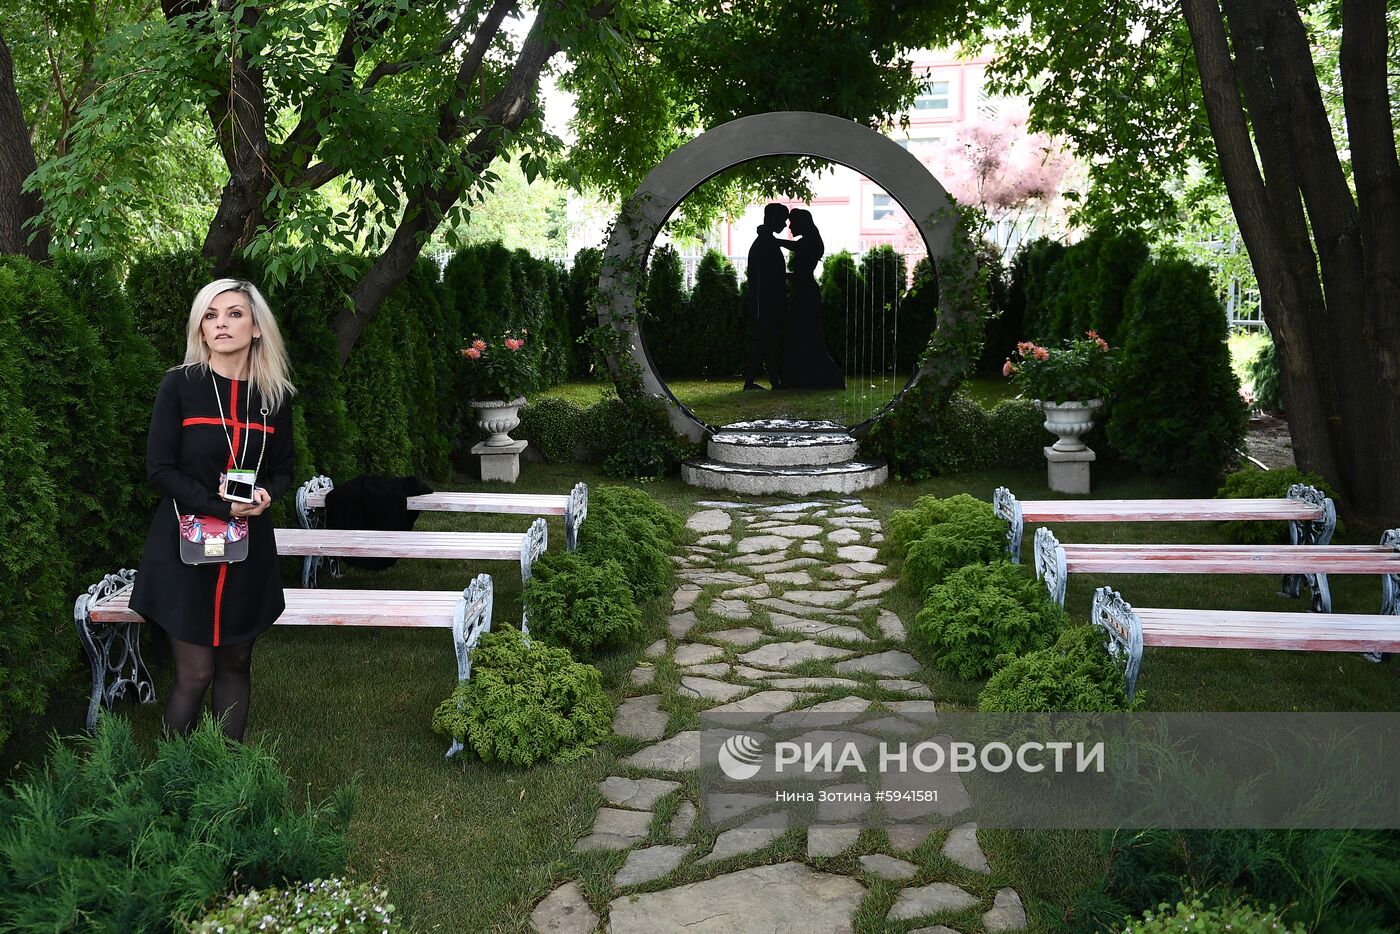 Фестиваль садов и цветов Moscow Flower Show